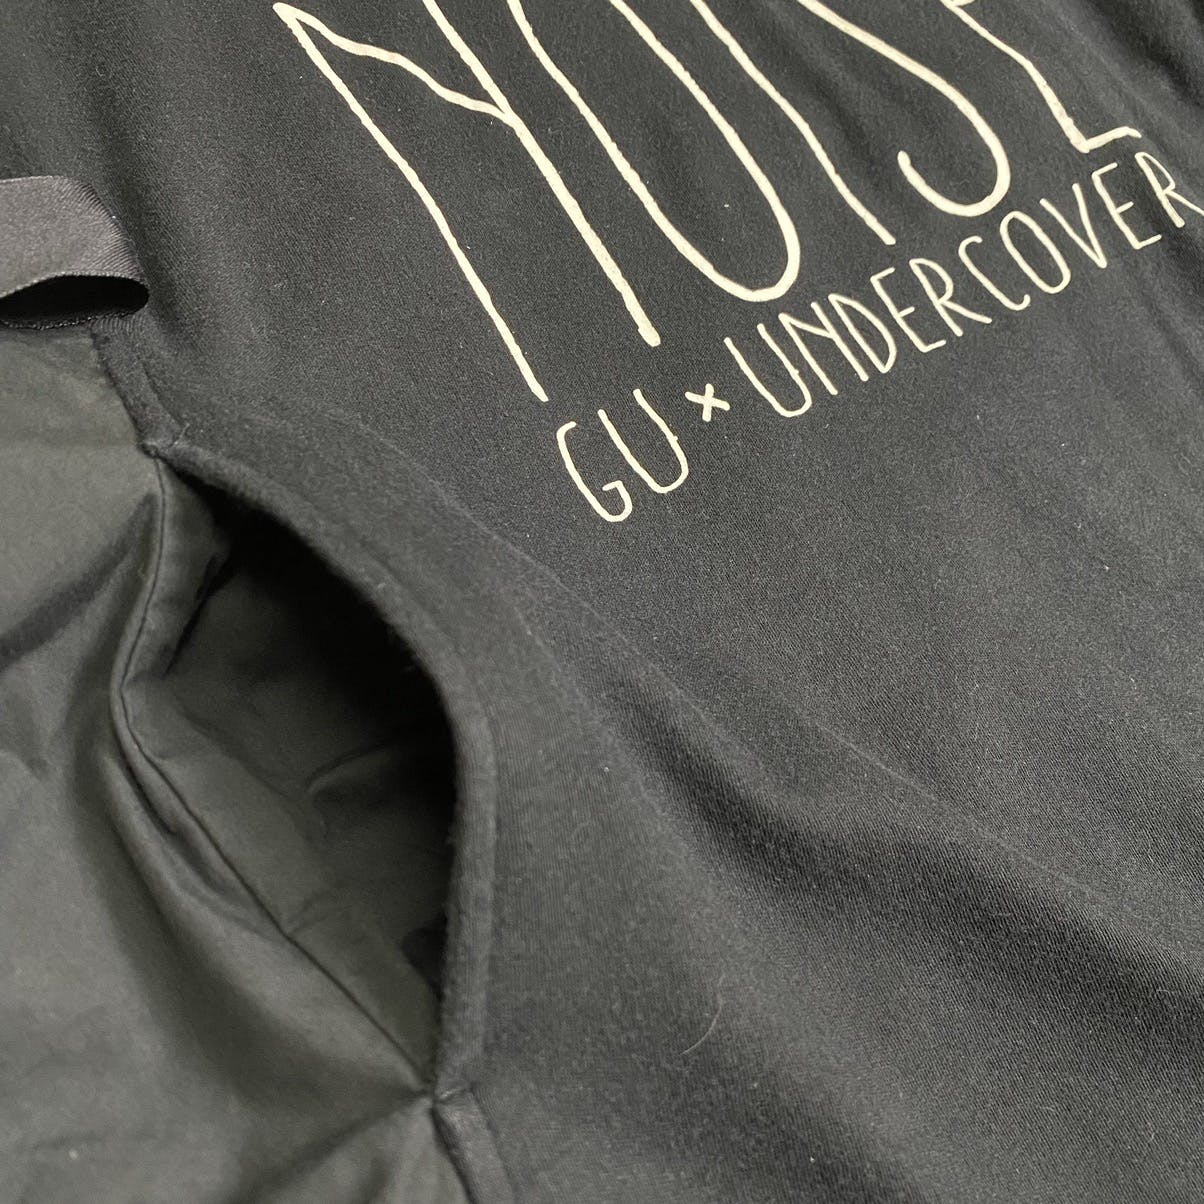 GU X Undercover maxi dress shirt - 10